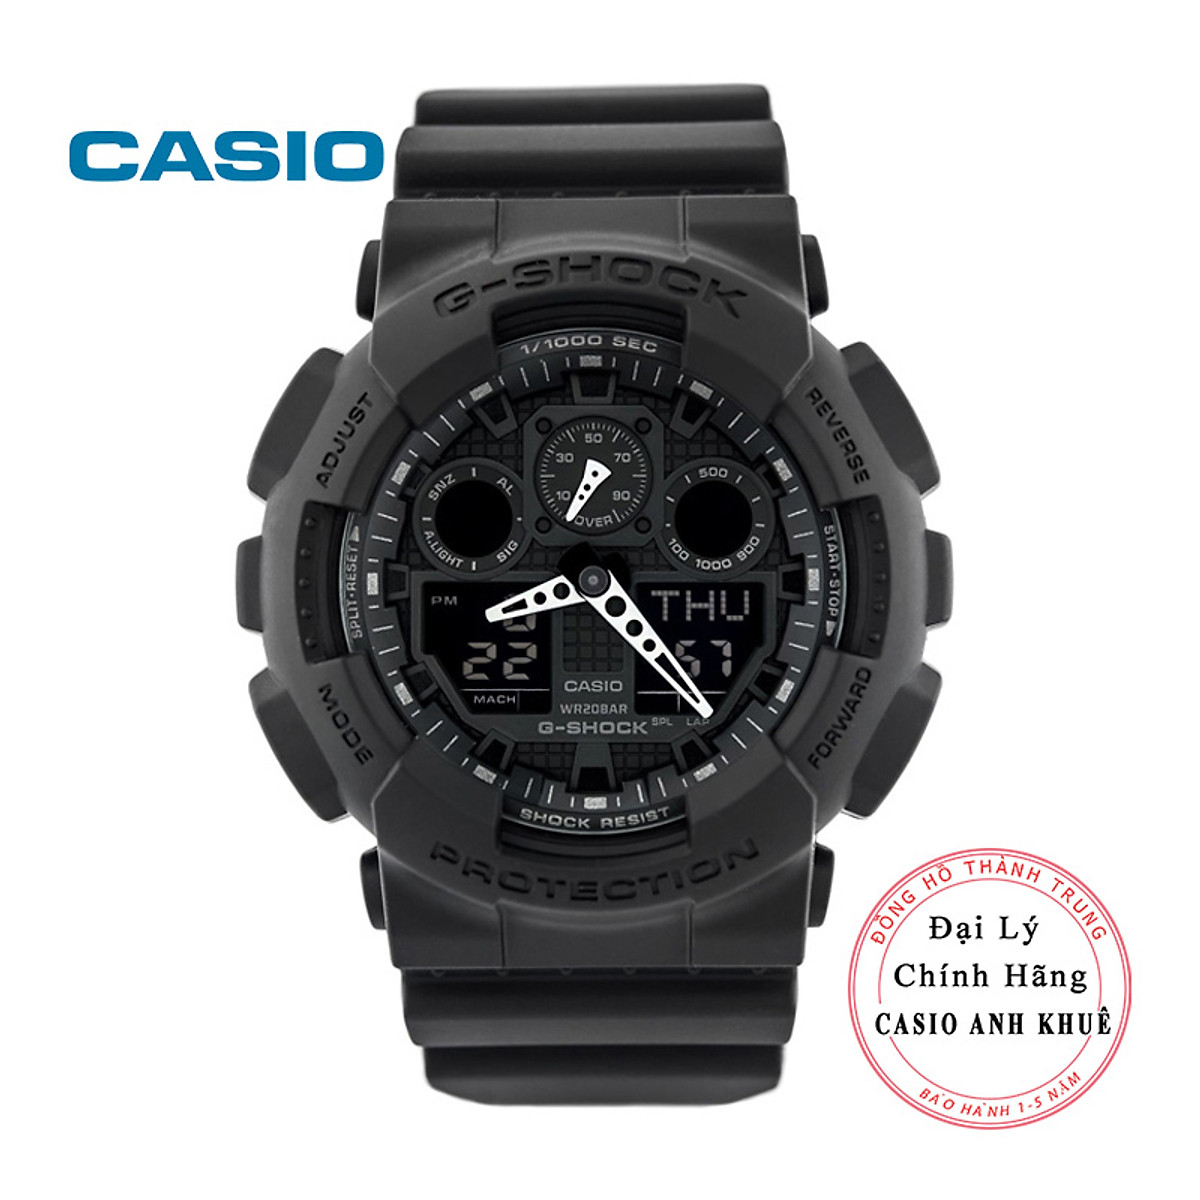 Khám phá đồng hồ Casio GA-100-1A1DR